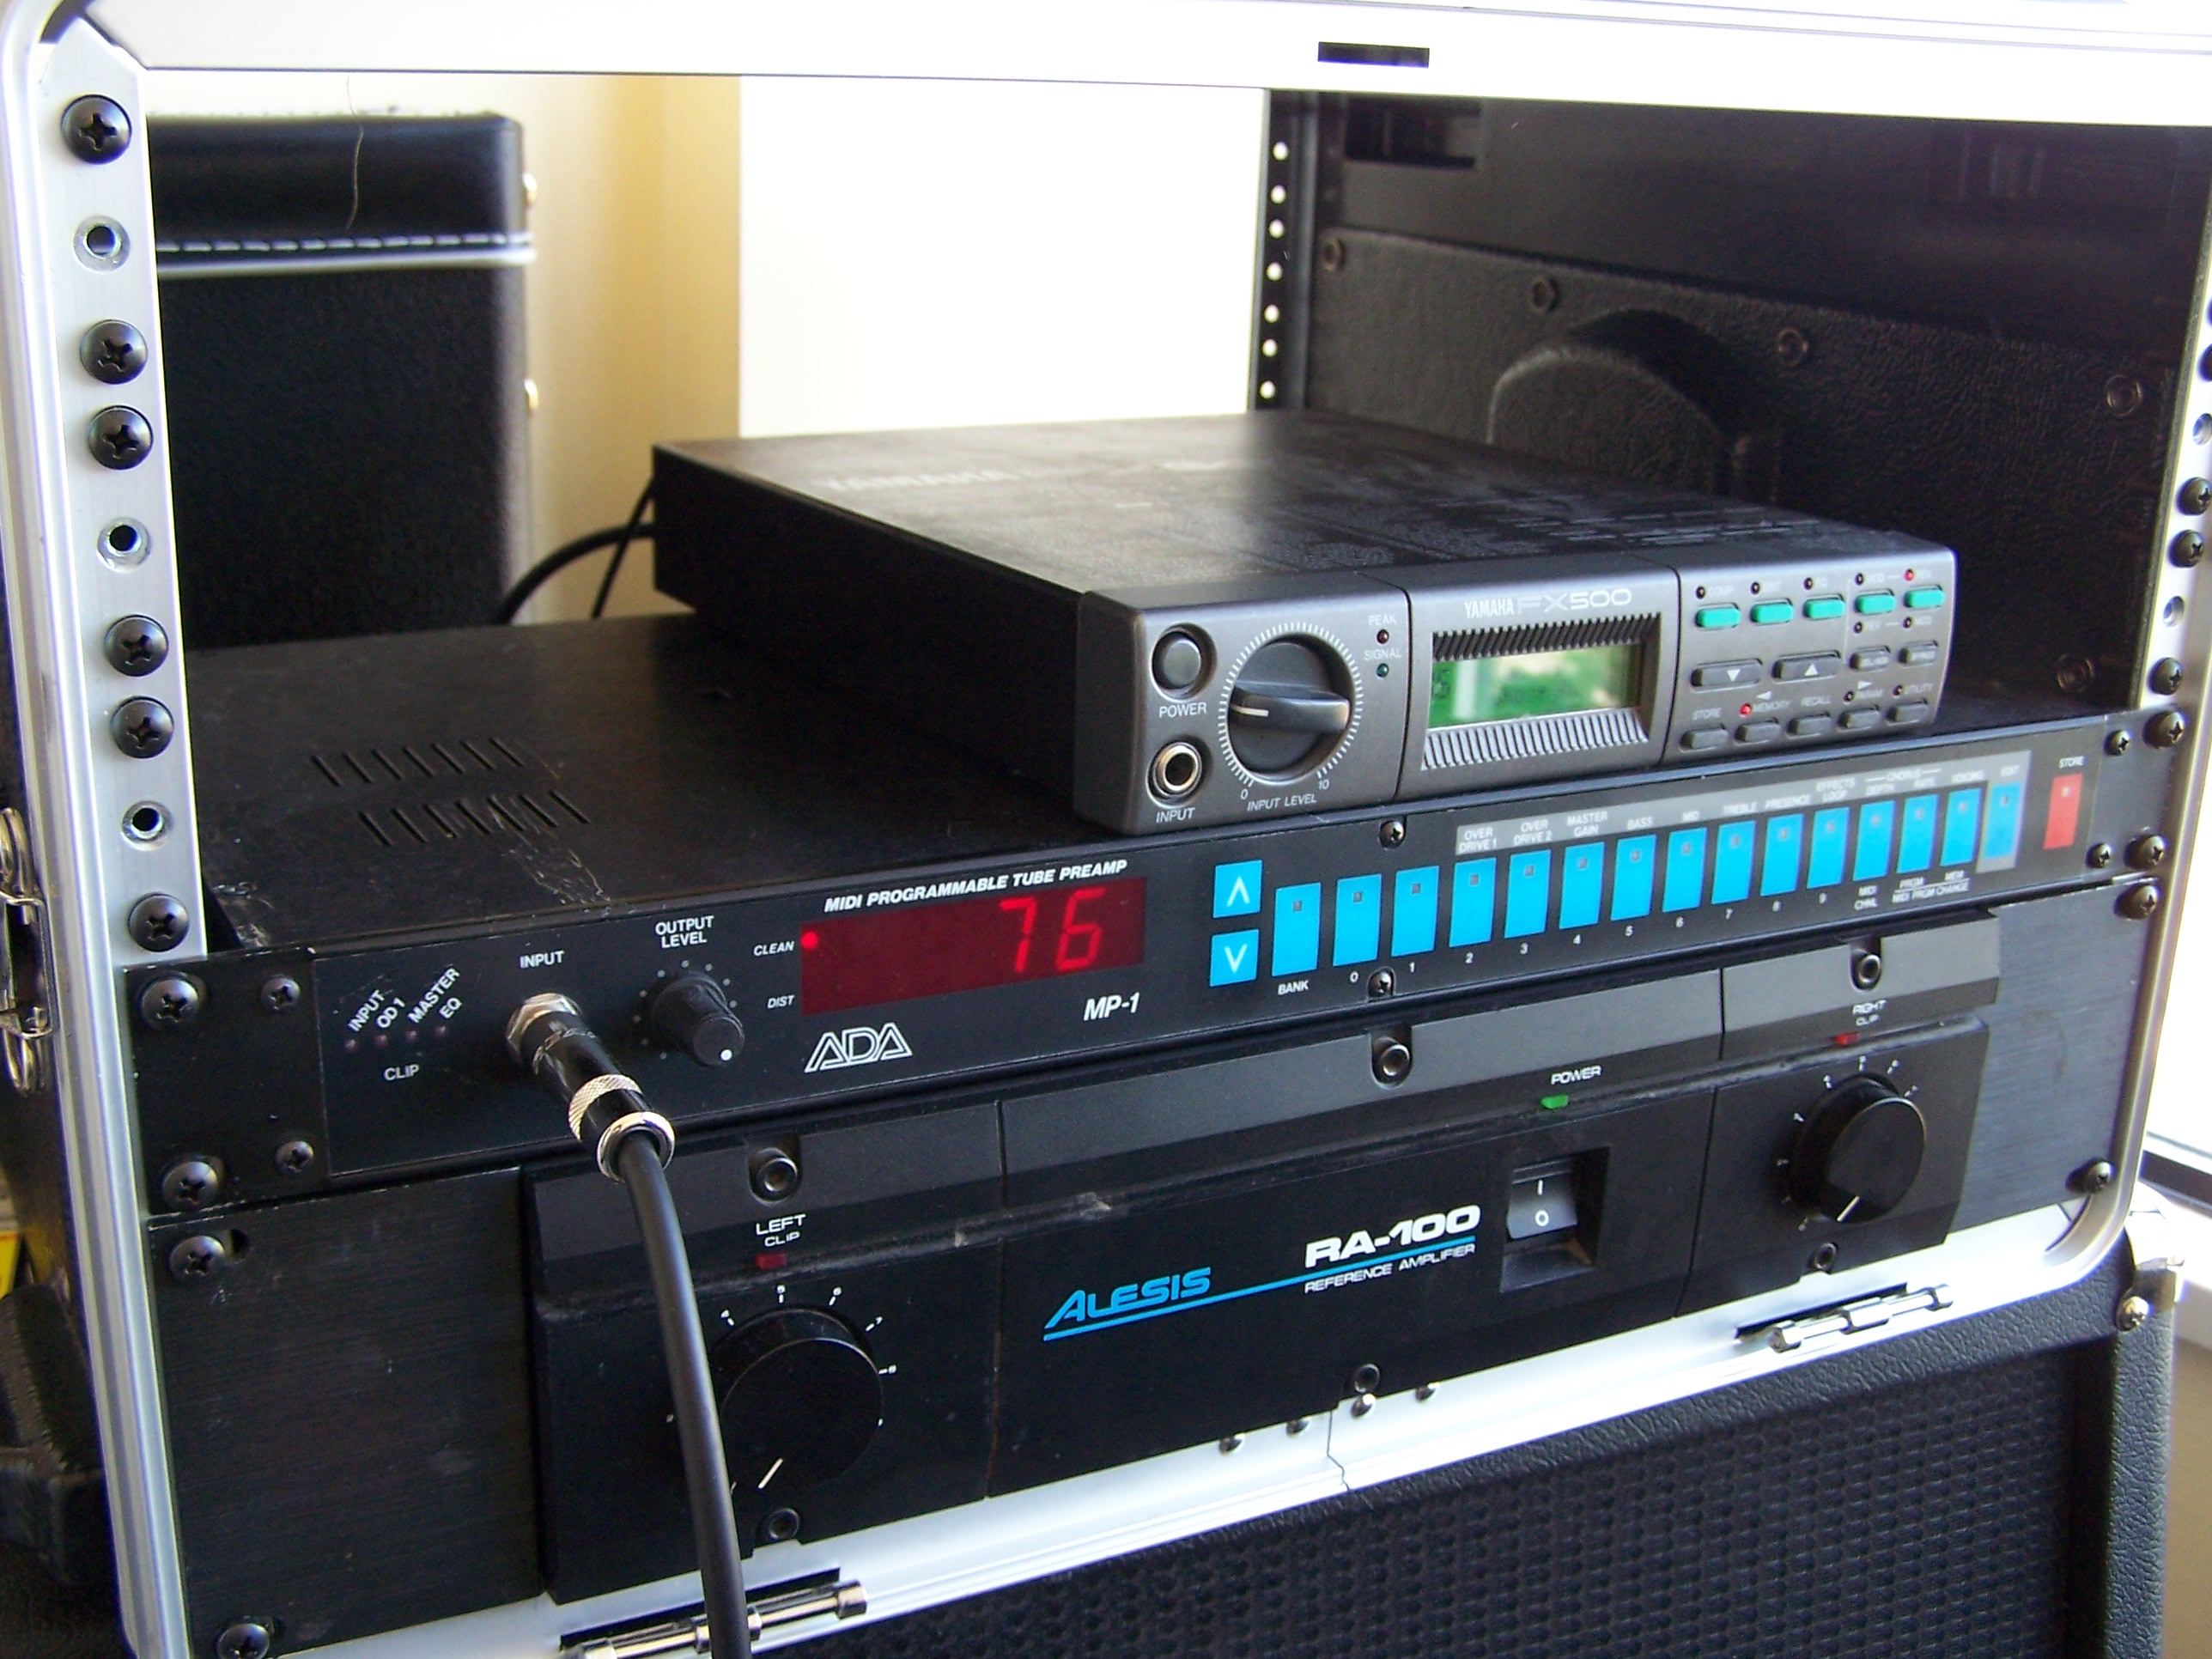 Amplifier in rack case